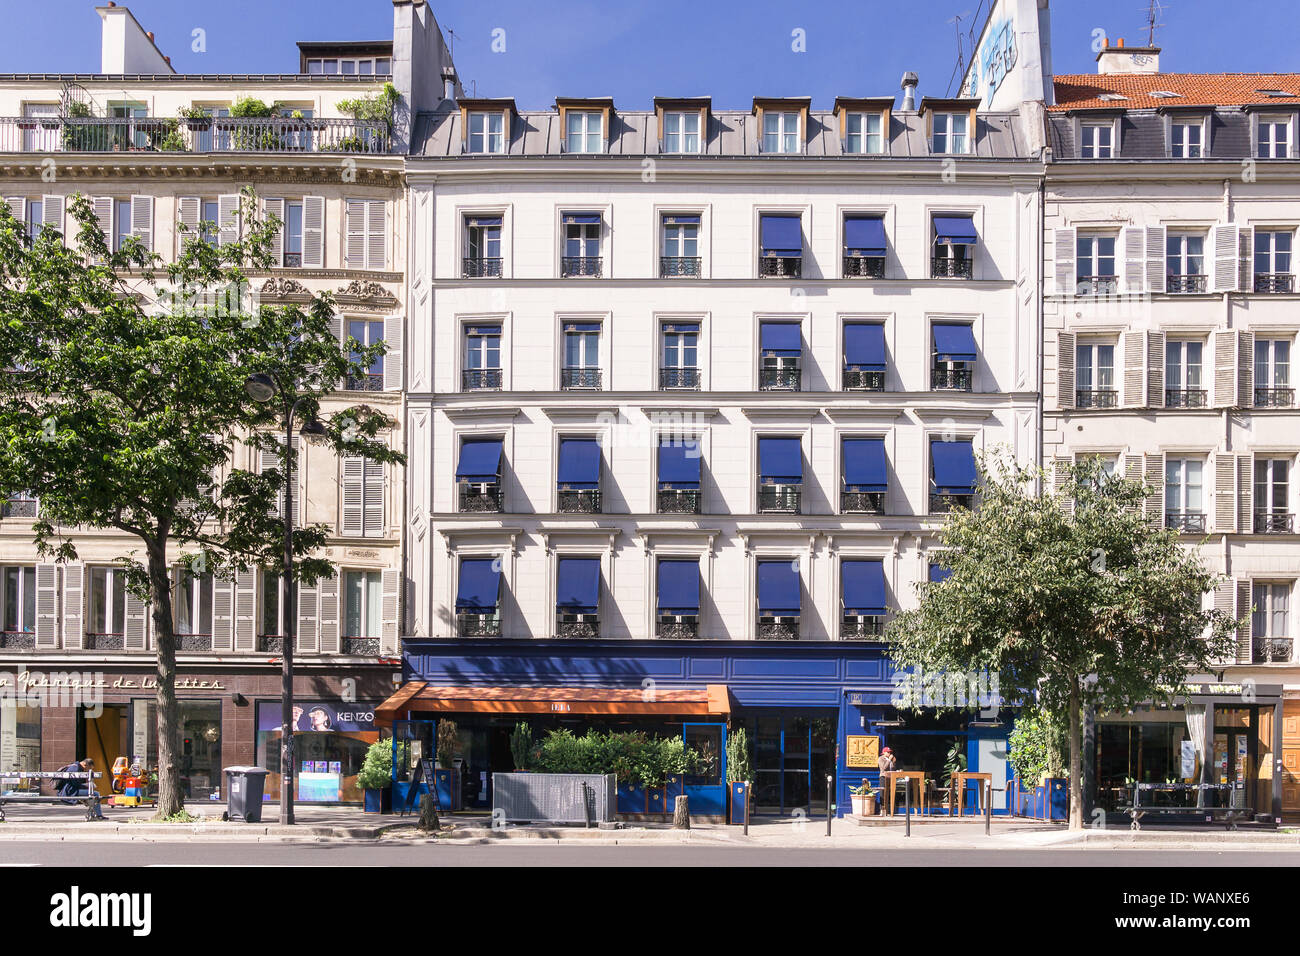 Paris Street - Gebäude mit blauen Fensterläden, Boulevard Beaumarchais in Paris an einem Sonntag Morgen. Frankreich, Europa. Stockfoto